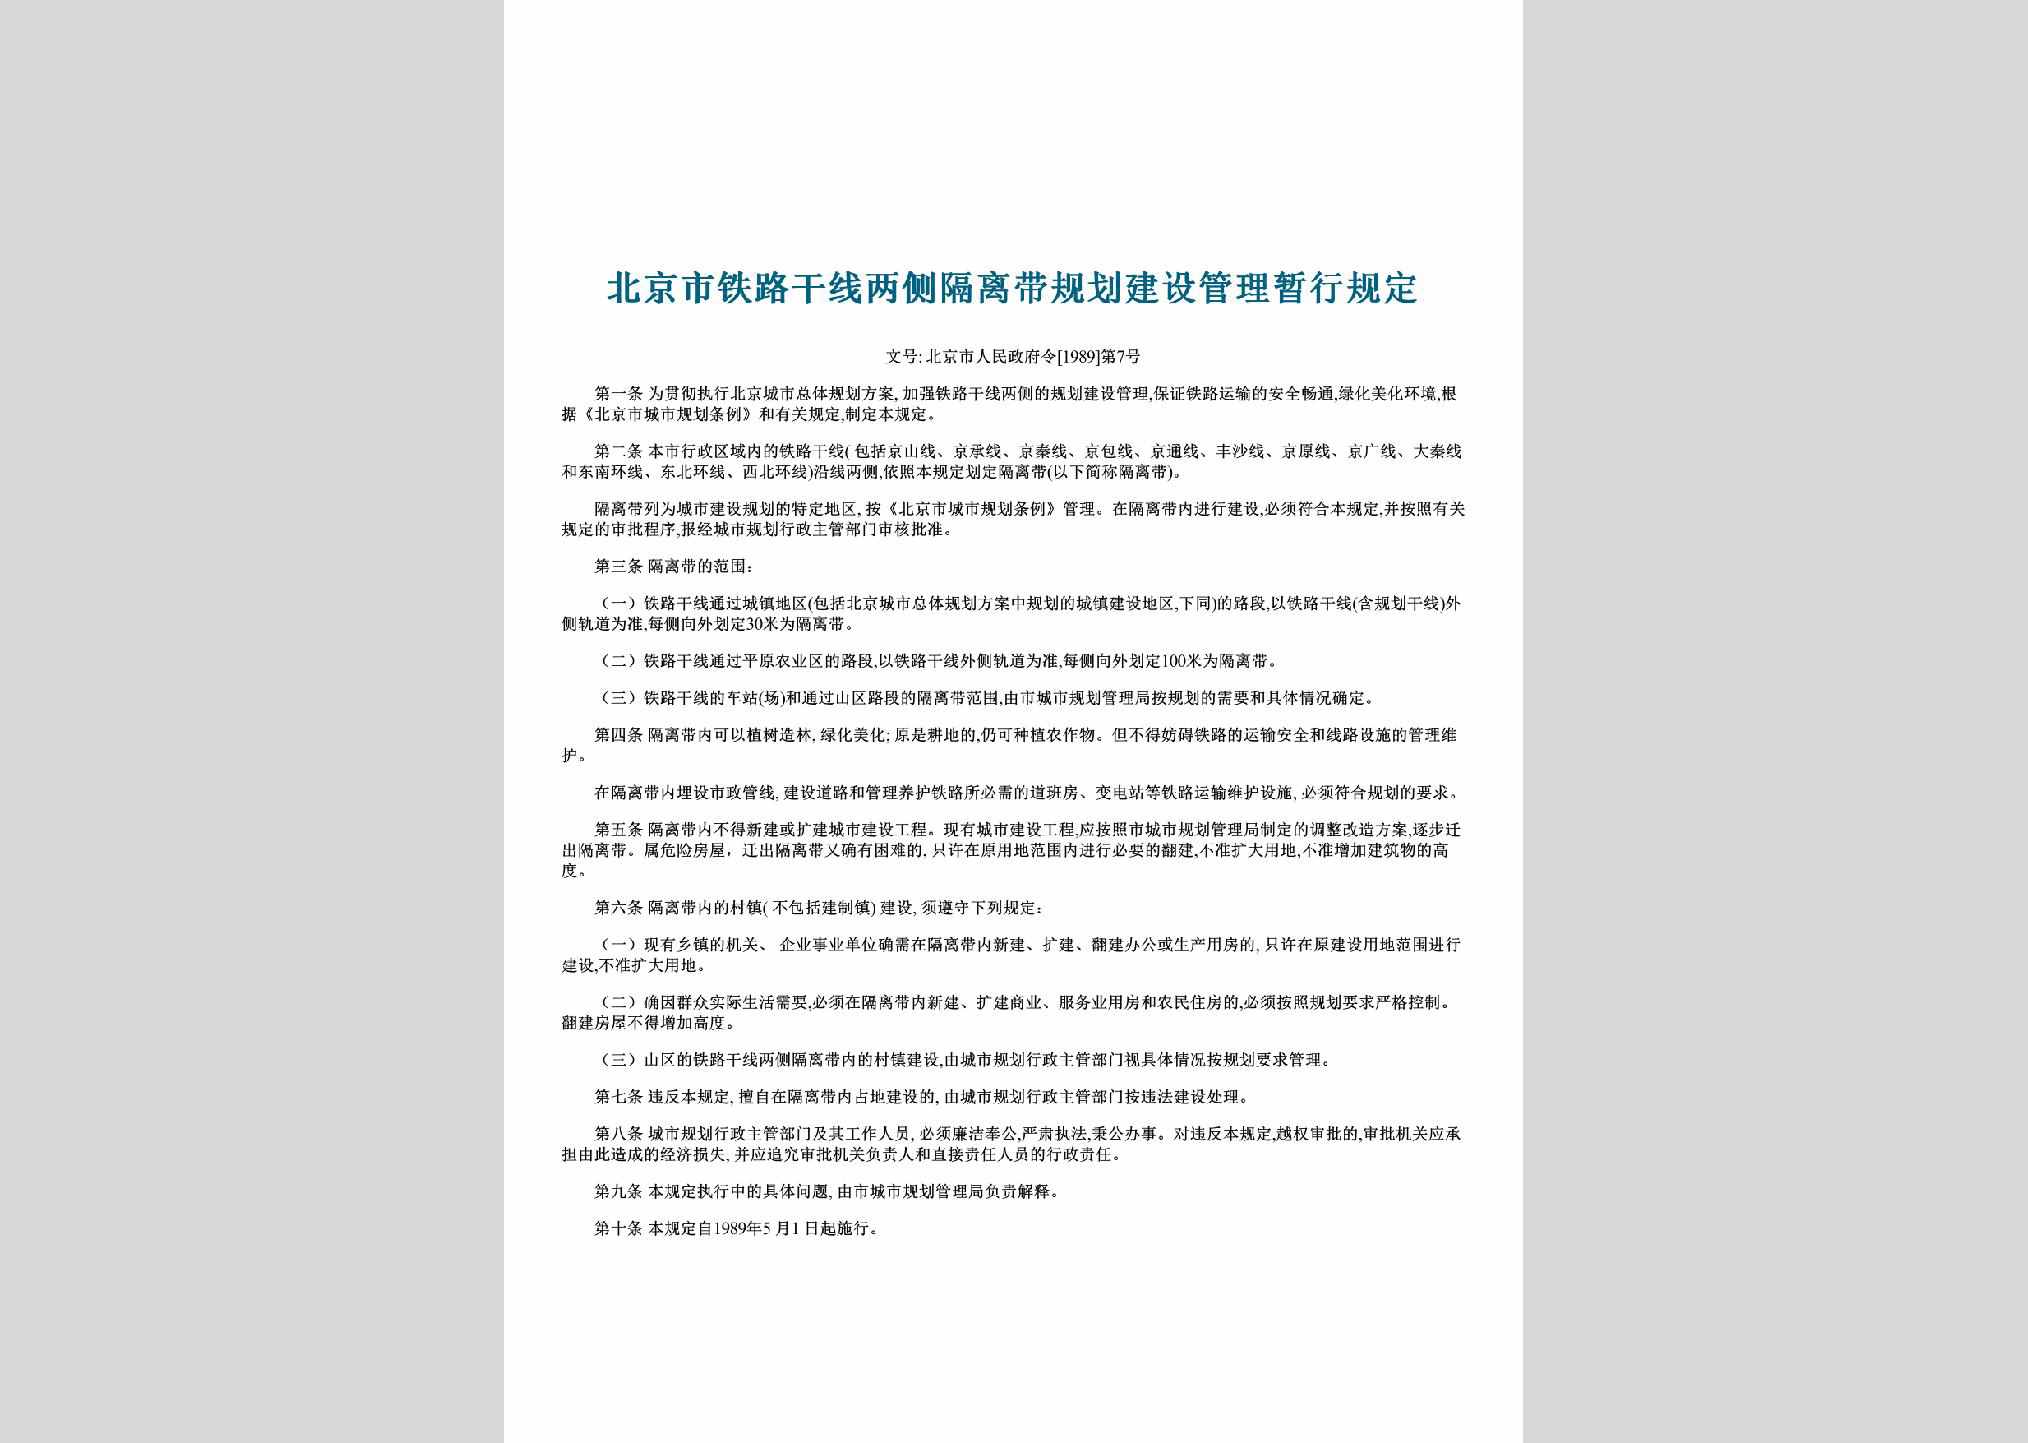 北京市人民政府令[1989]第7号：北京市铁路干线两侧隔离带规划建设管理暂行规定